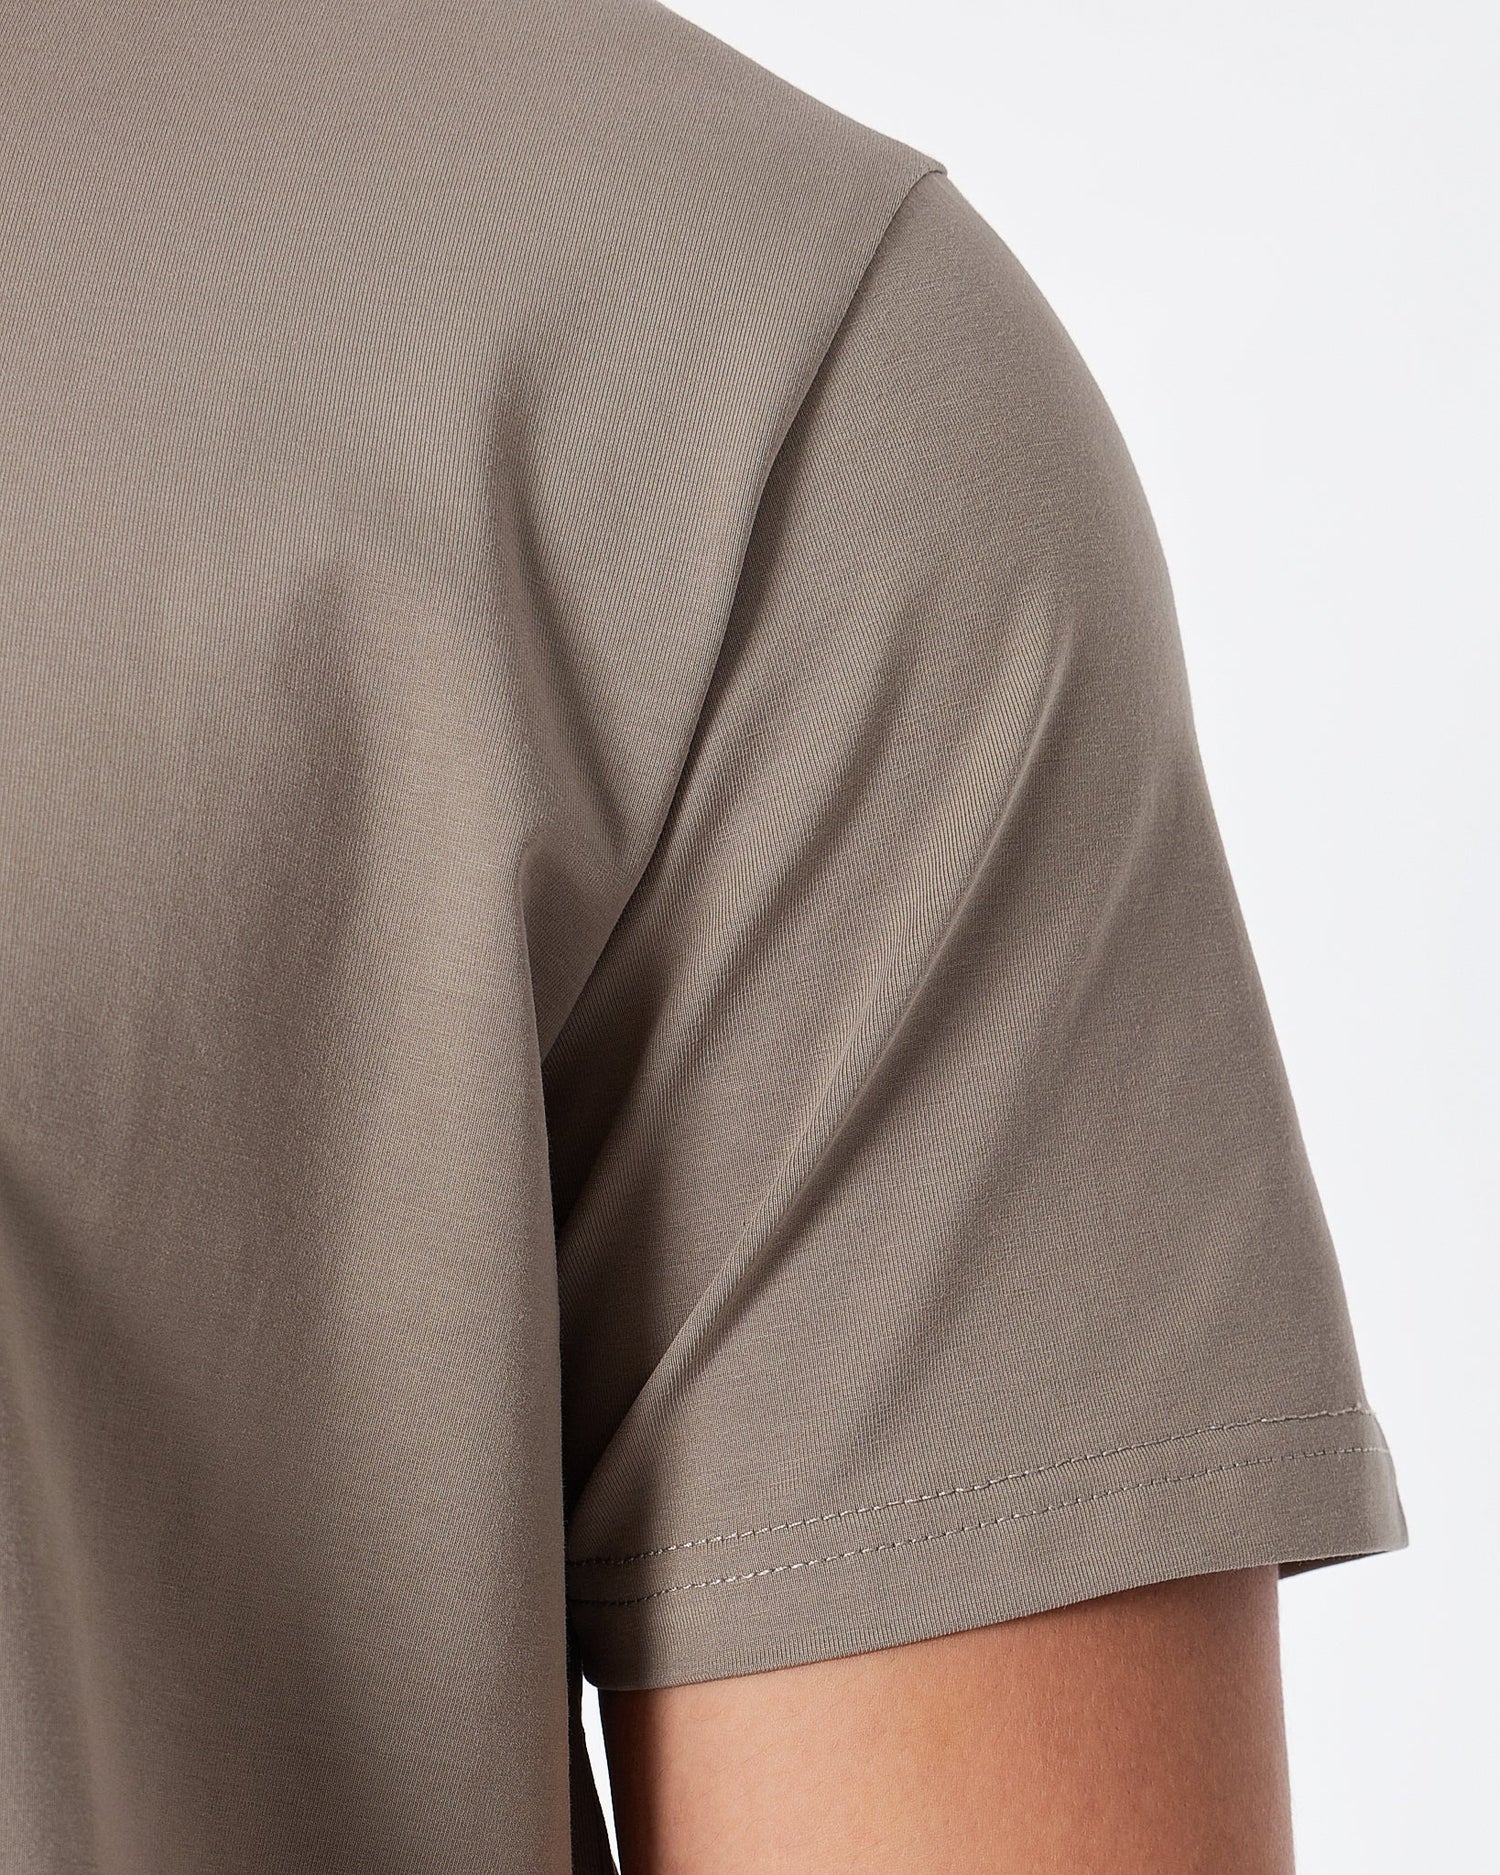 MOI OUTFIT-ABA Plain Color Men Grey T-Shirt 14.90